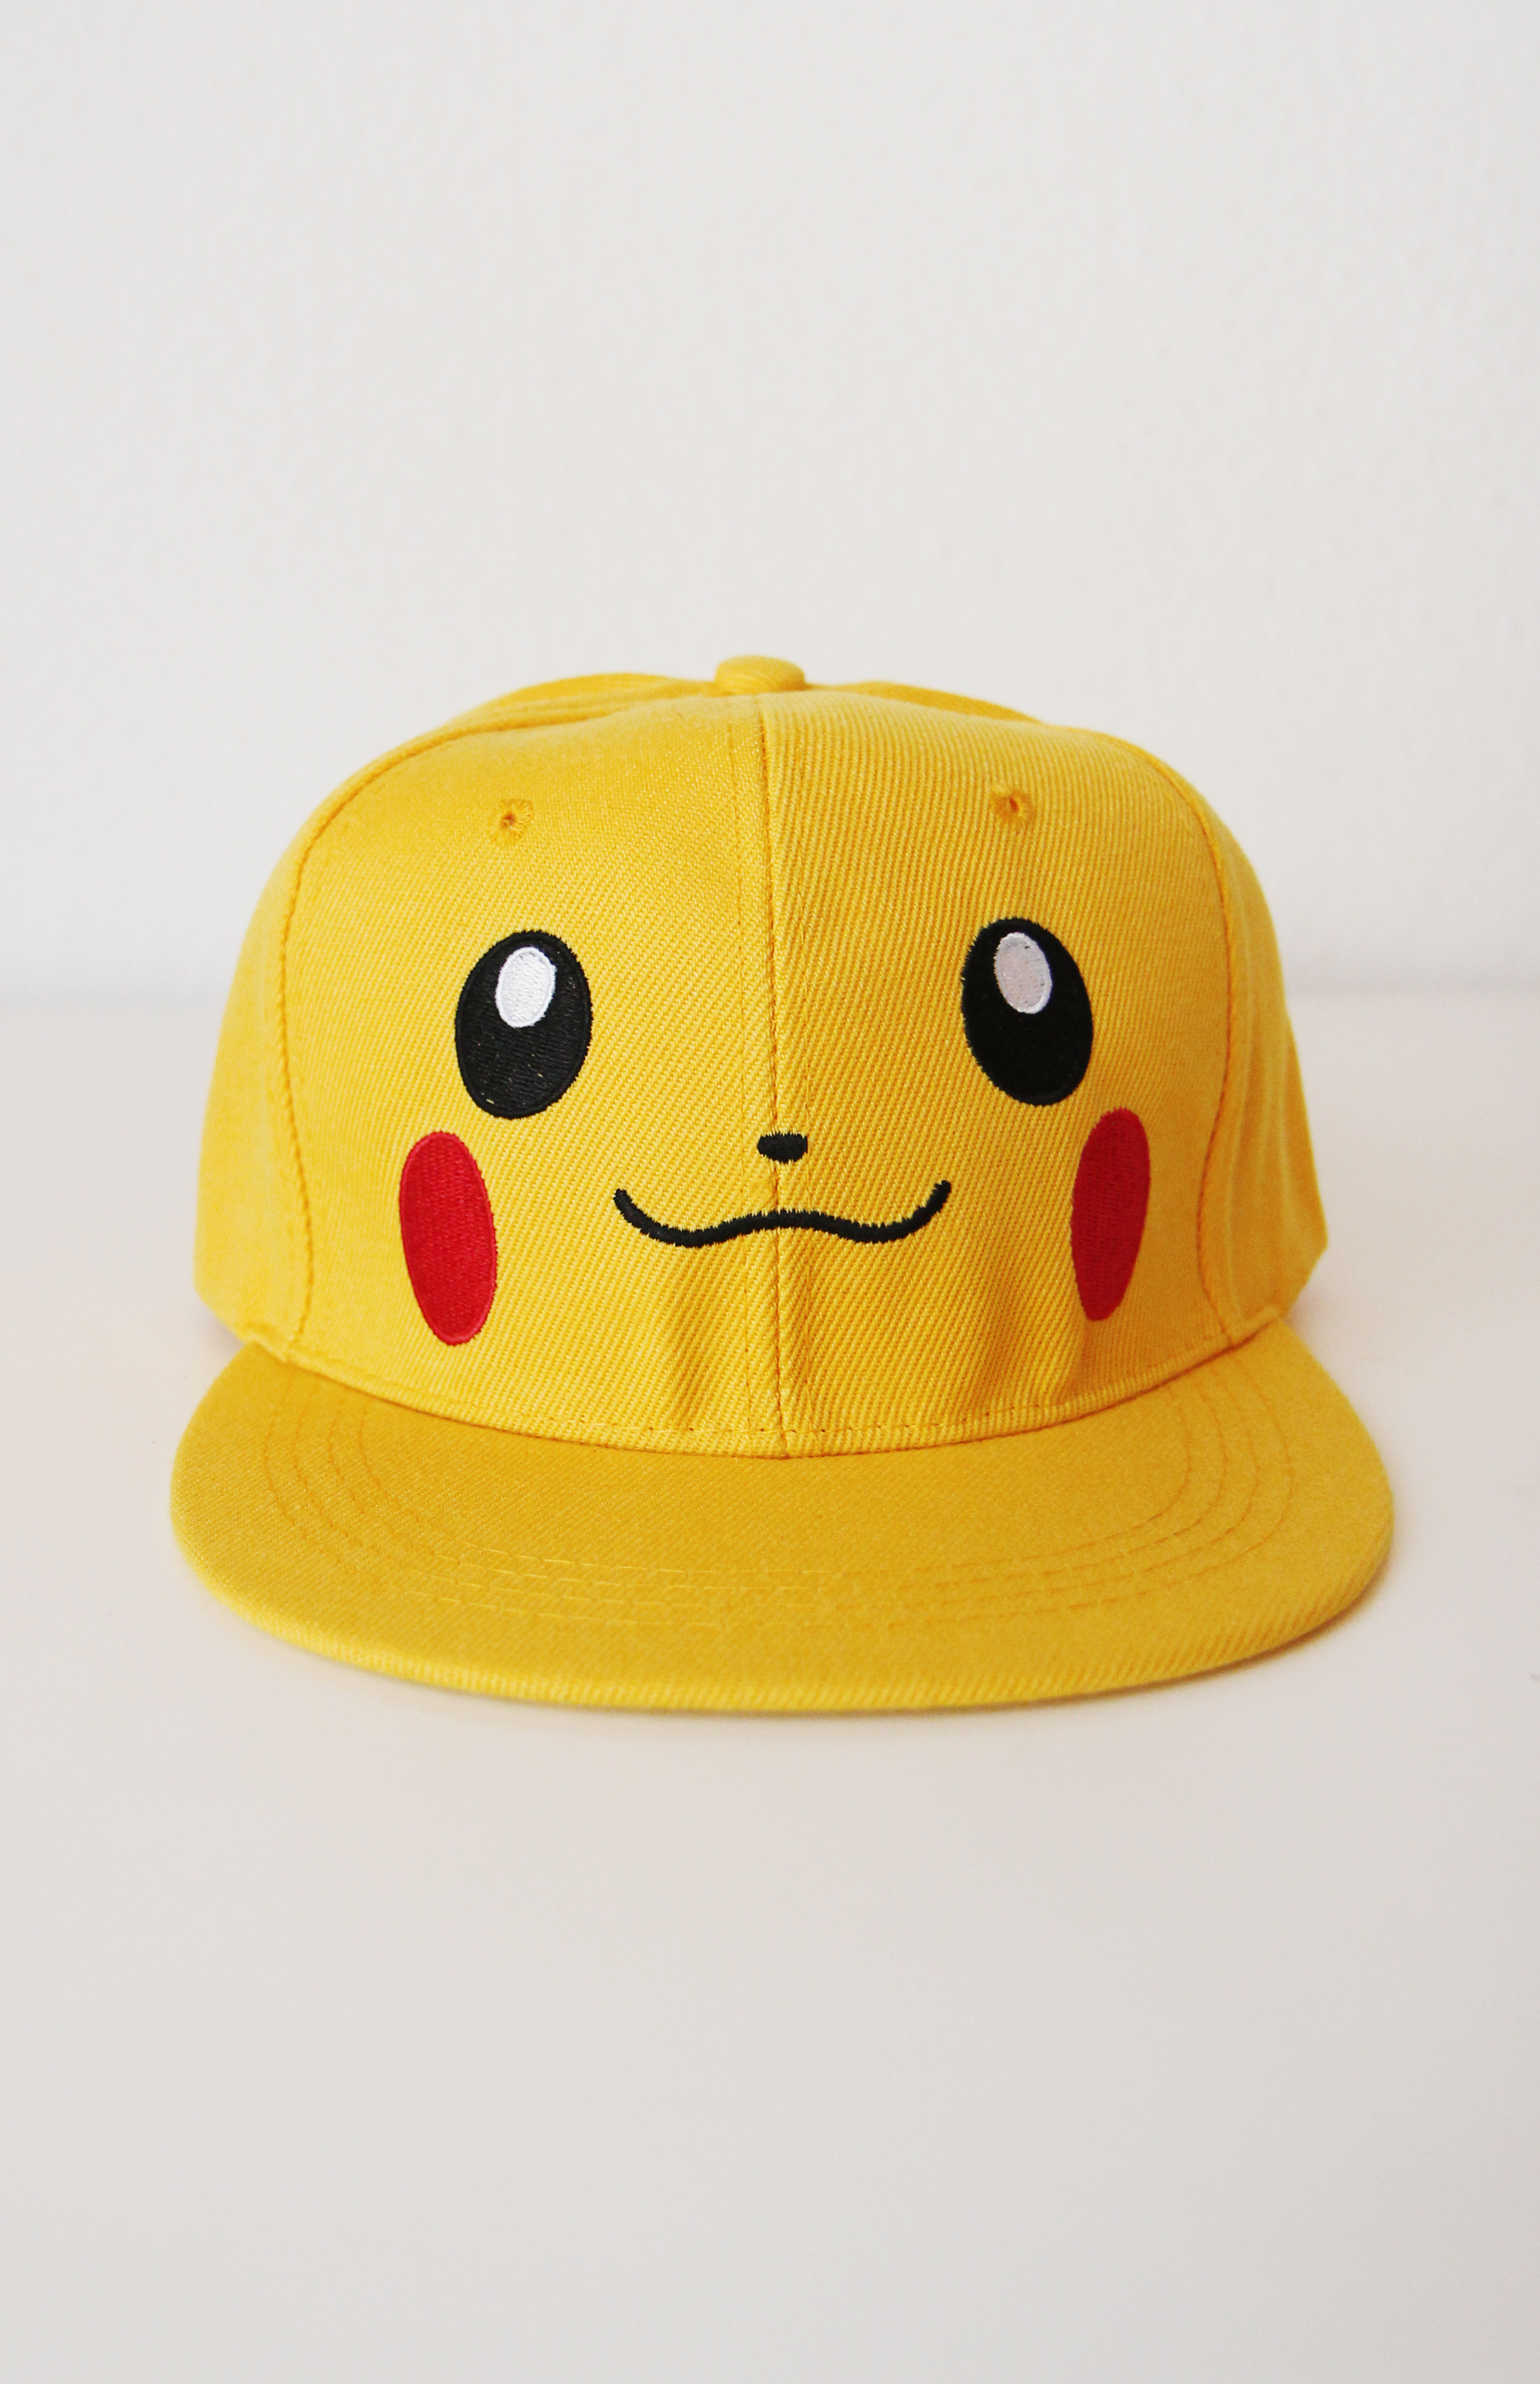 Schijnen bolvormig Convergeren Pikachu pet Pokémon kopen? Nu €14,95! - FeestinjeBeest.nl